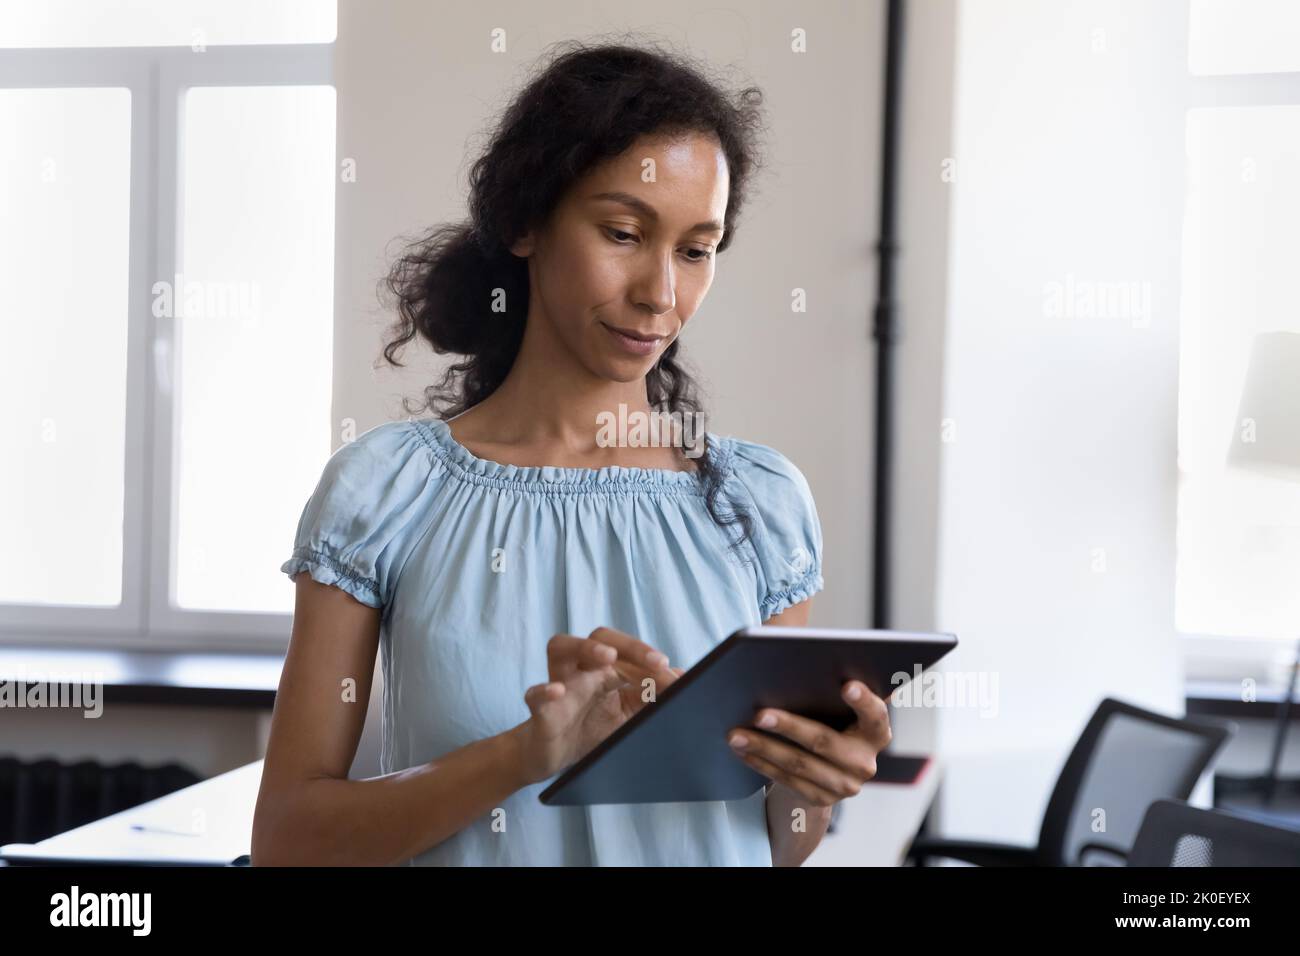 Une jeune femme africaine sérieuse utilisant une application en ligne professionnelle Banque D'Images